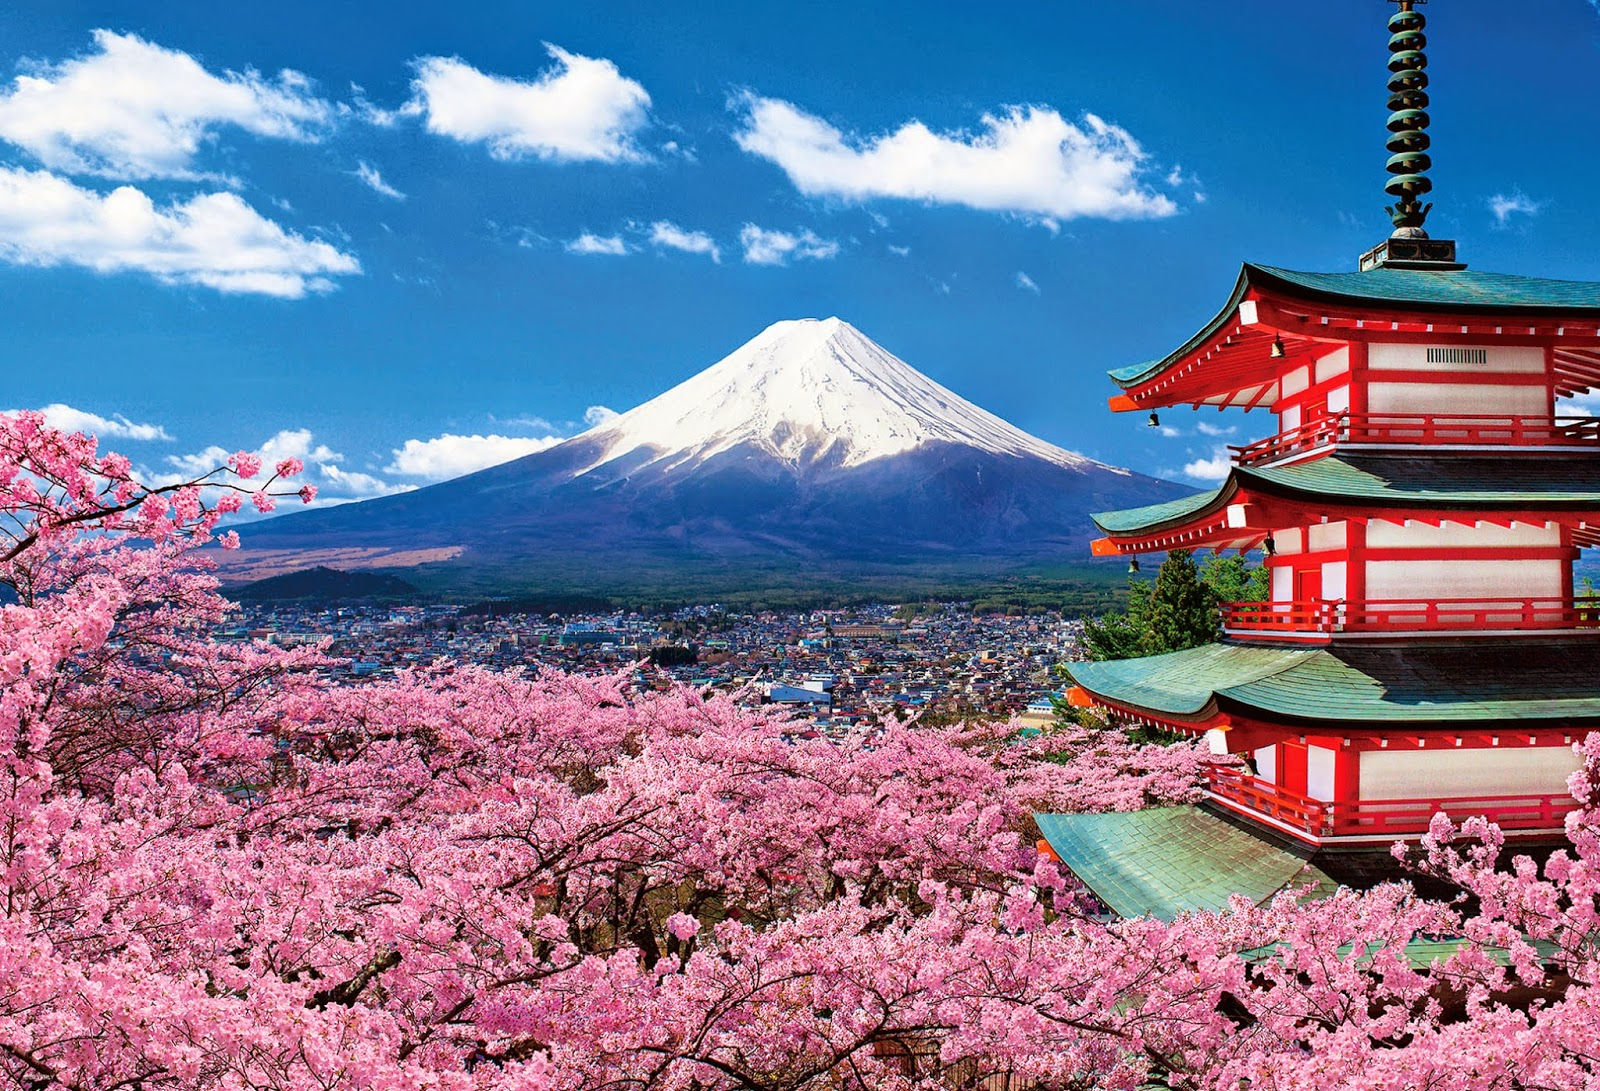 Du lịch Nhật Bản dễ dàng hơn với những bí quyết từ hướng dẫn viên bản địa